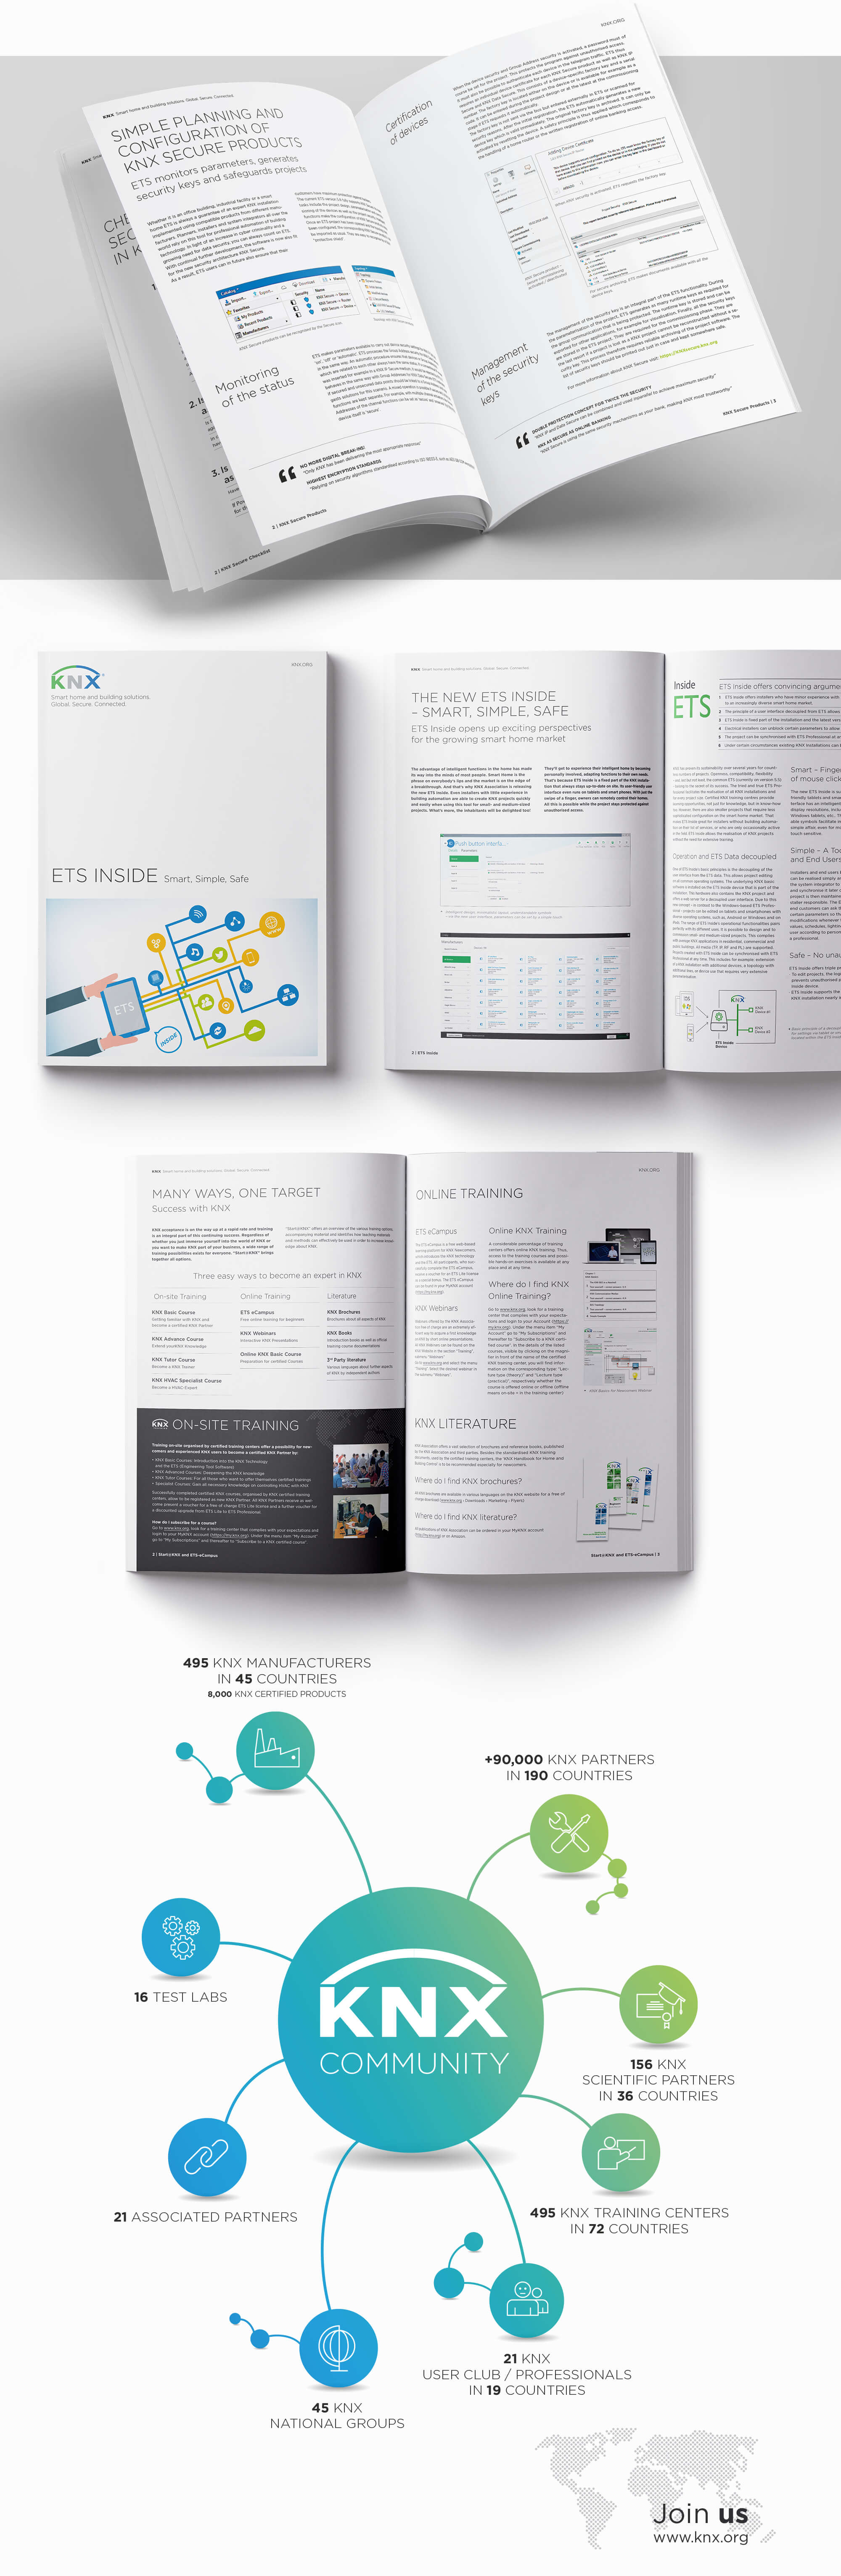 KNX ETS Inside Magazin Corporate Design, Satz, Layout und diverse Illustrationen Umschlag und Rückseite